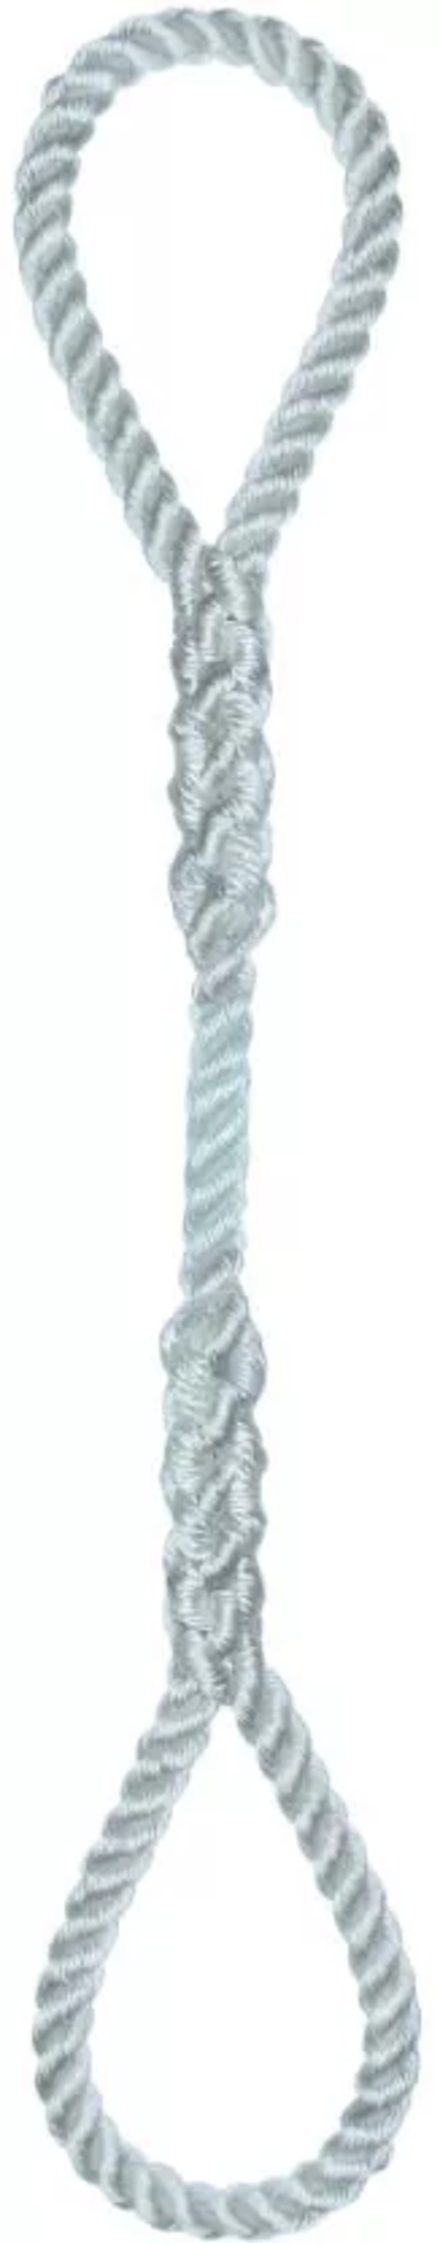 Élingue corde d.6 mm cmu 56 kg 2 grandes boucles long 1 m LEVAC - 4404D